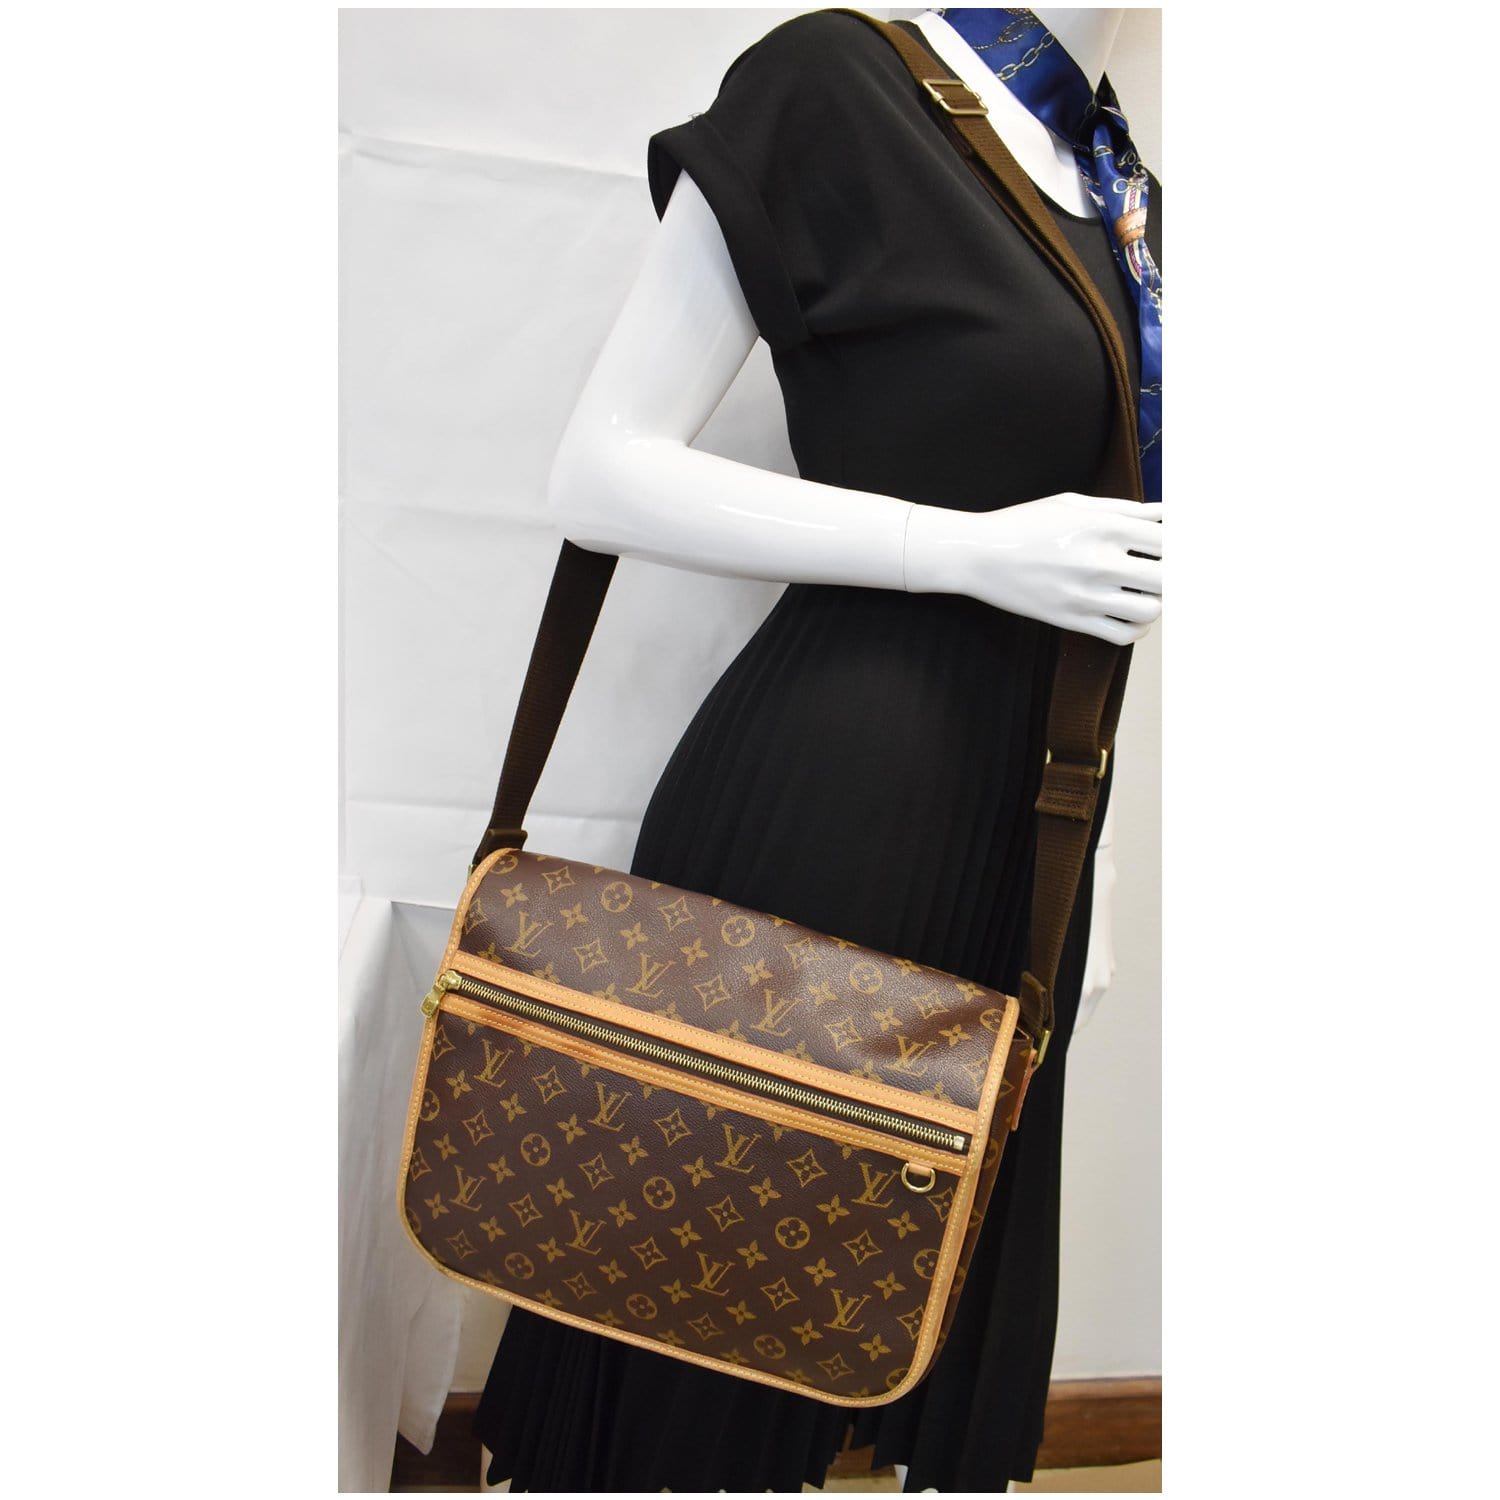 Shop for Louis Vuitton Monogram Canvas Leather Bosphore Messenger